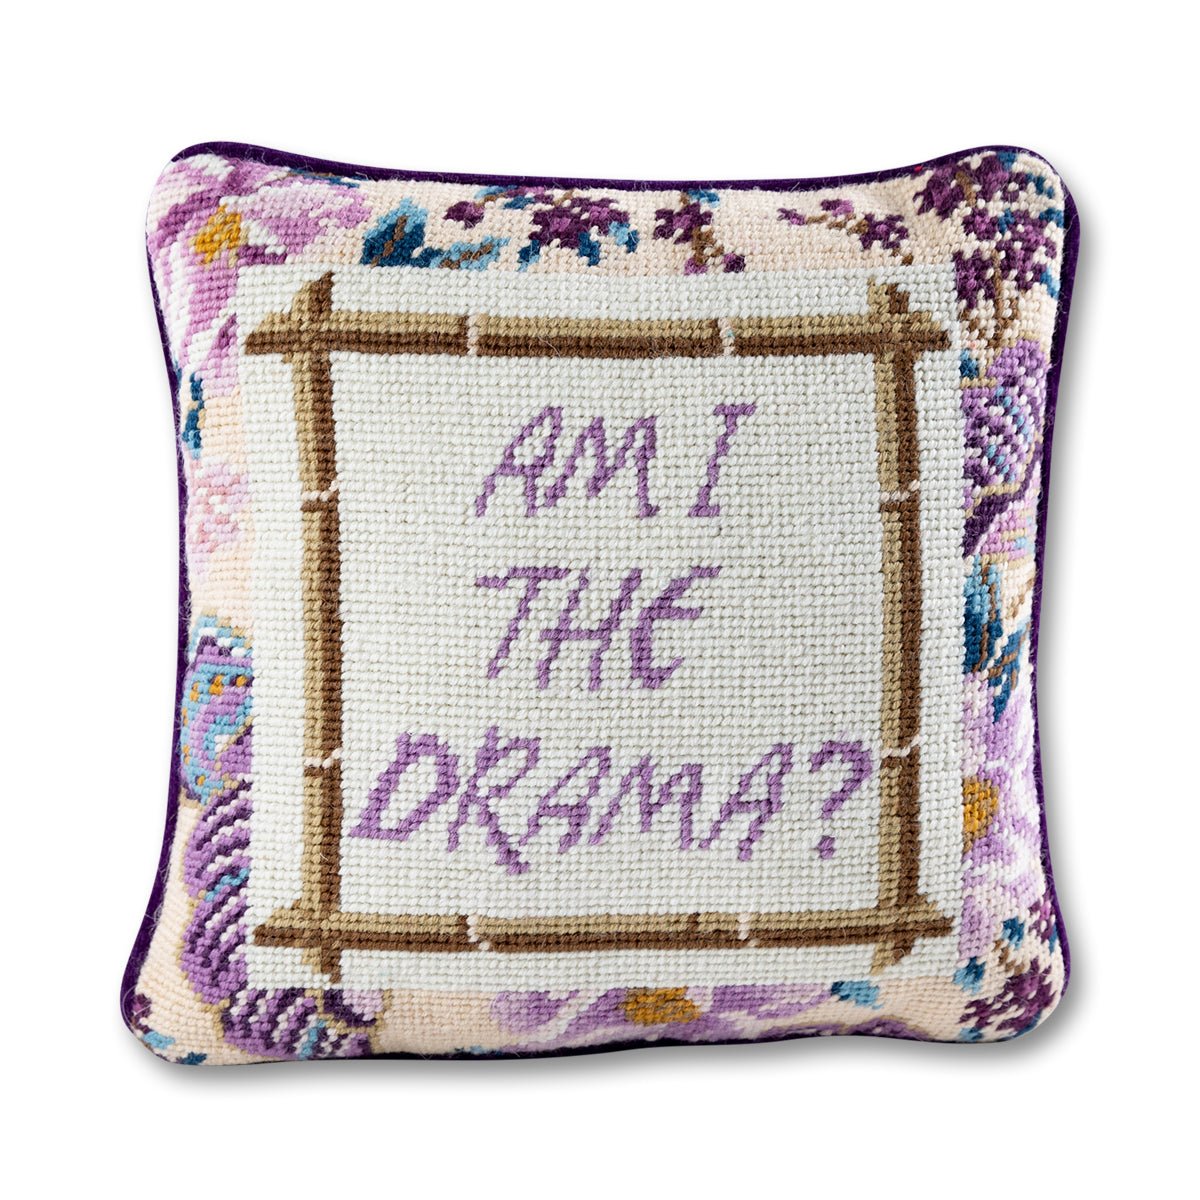 Drama Needlepoint Pillow - Throw Pillows - Furbish Studio - The Grove